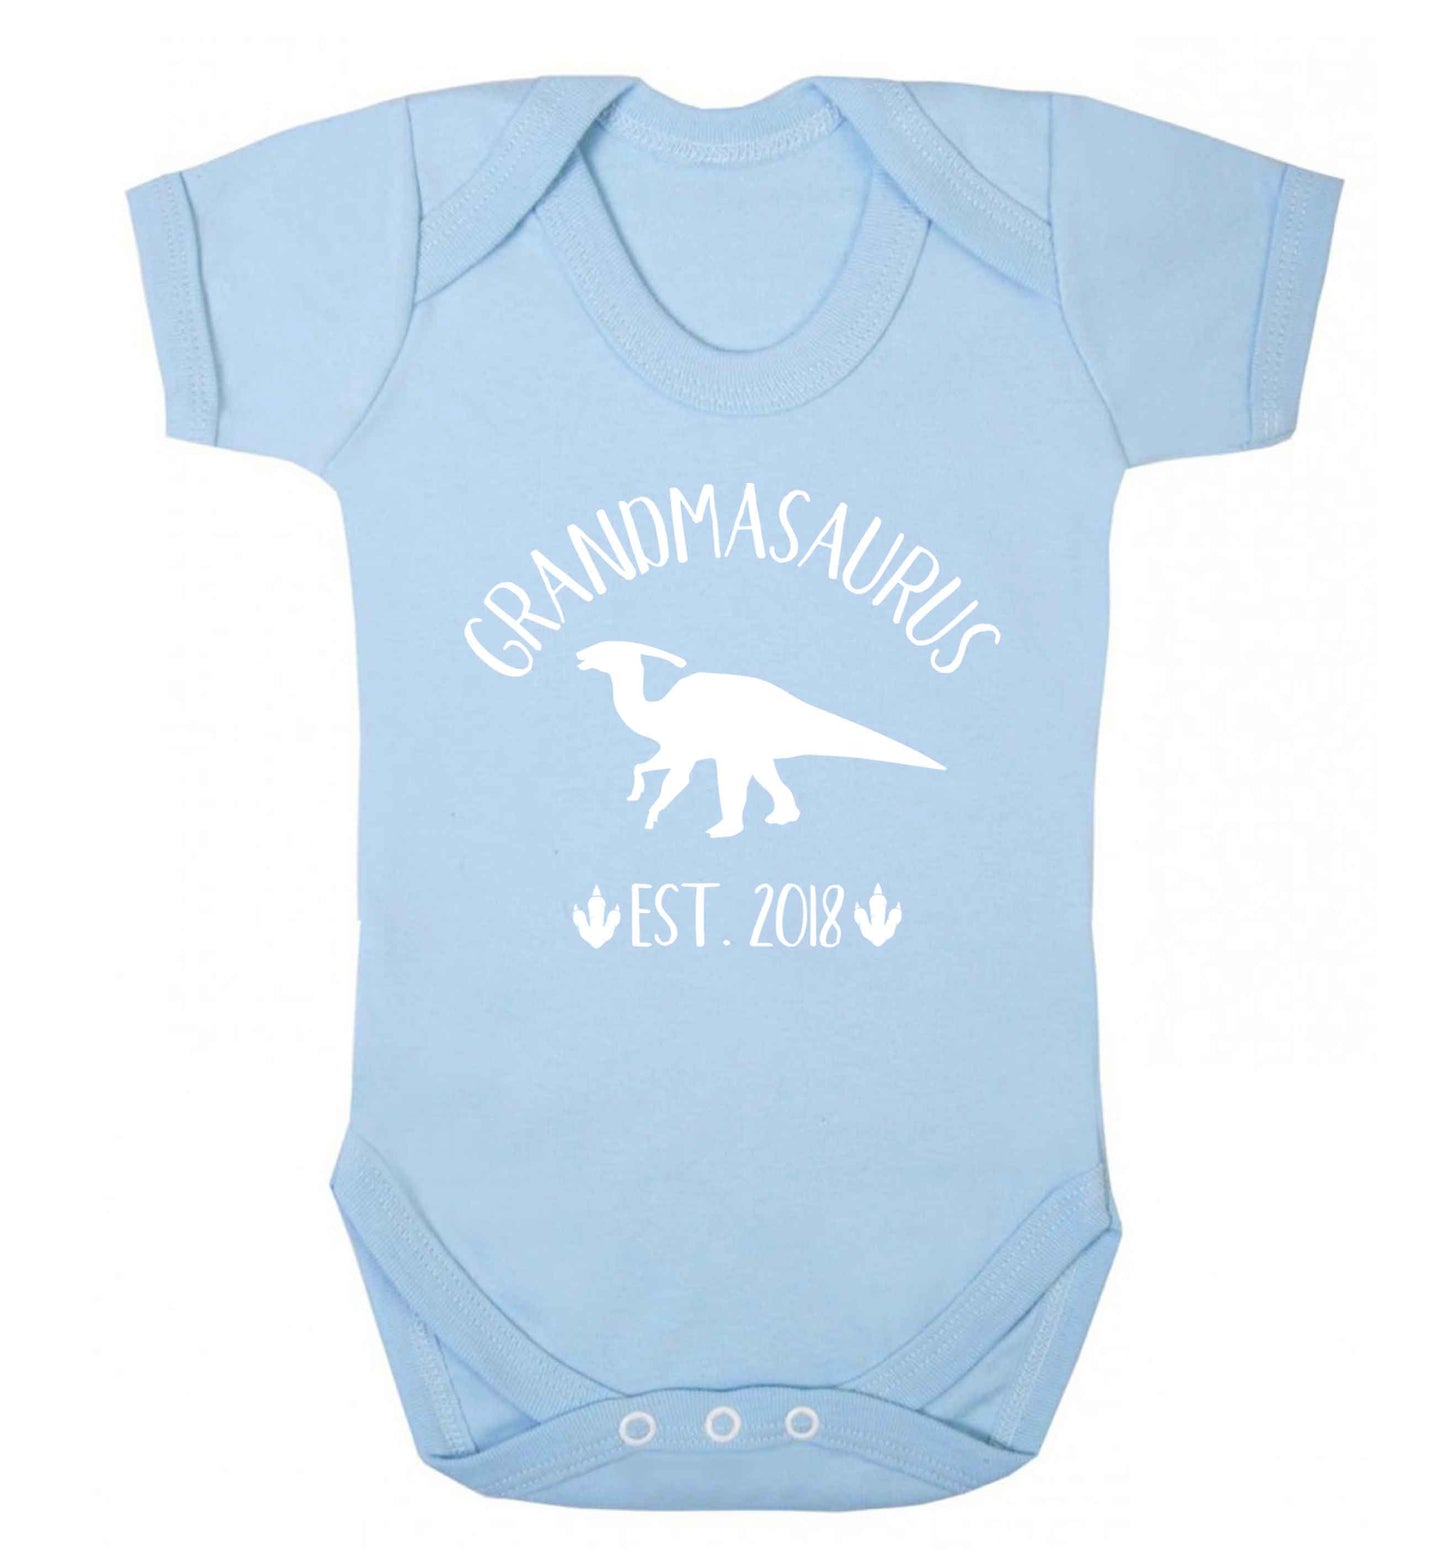 Personalised grandmasaurus since (custom date) Baby Vest pale blue 18-24 months